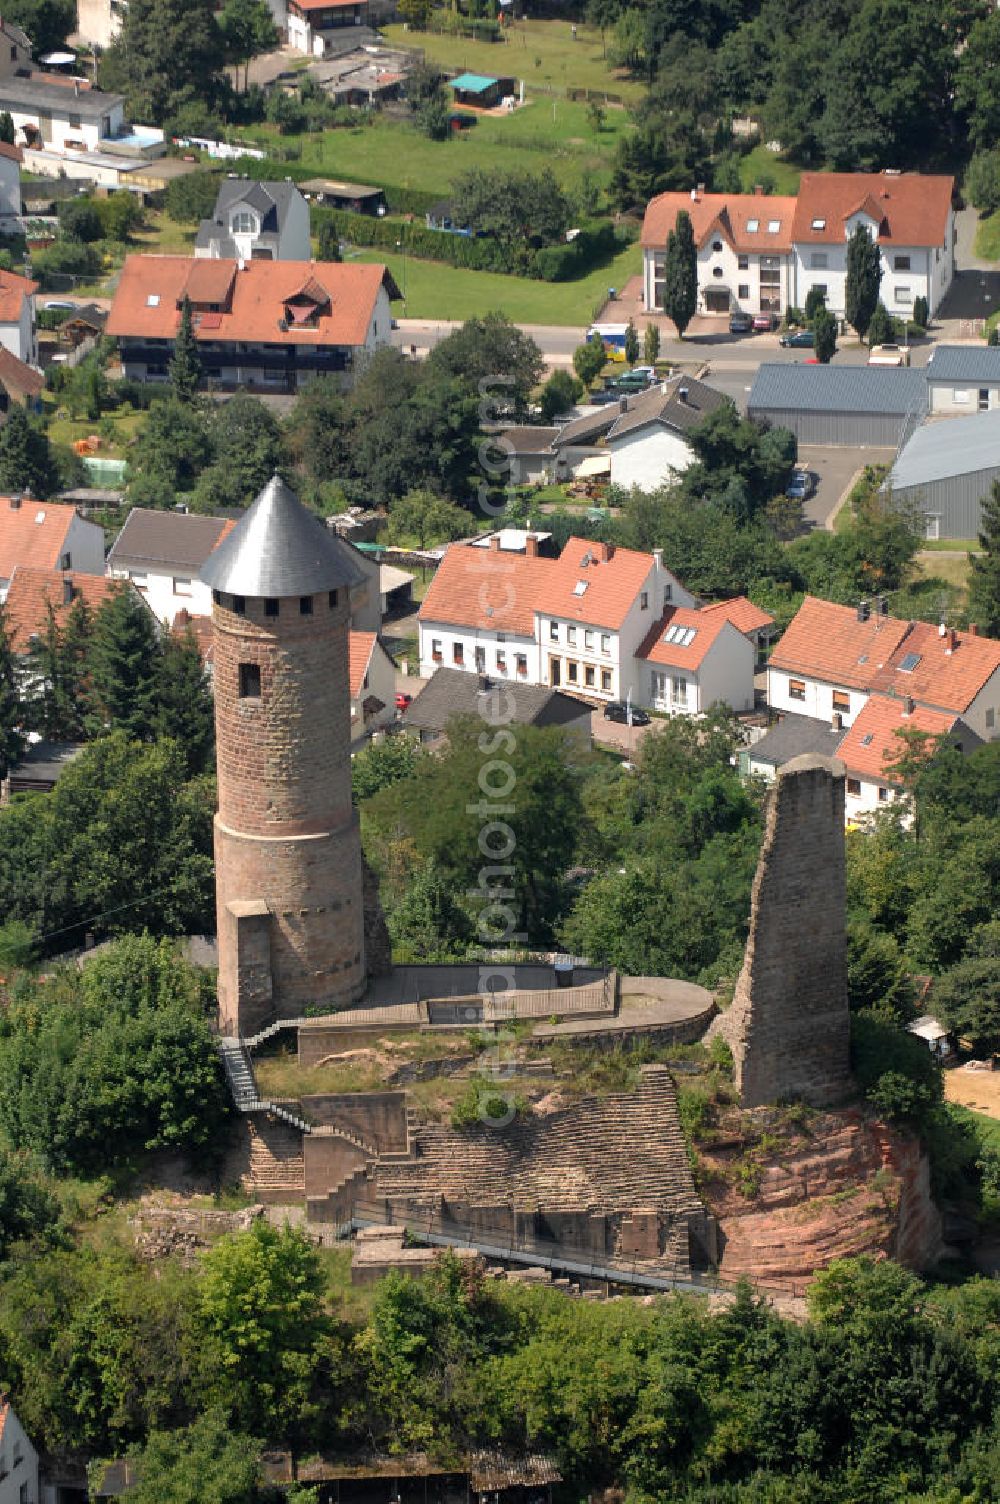 Kirkel from above - Blick auf die Burgruine Kirkel. Sie liegt in 307 m Höhe auf einem Bundsandsteinfelsen. Erbaut wurde sie im 11. Jahrhundert, die beiden Türme stammen aus dem 13. Jahrhundert. Im 16. Jahrhundert wurde die Burg zum Wohnschloss für Herzog Johann I. umgebaut. Die Burg wurde mehrmals zerstört und ab 1740 als Steinbruch genutz. Der Rundturm wurde 1955 wieder aufgebaut und diehnt nun als Aussichtsturm. Seit 1994 wird das Gelände als archäologische Forschungstätte genutzt, außerdem gibt es ein Museum und verschiedene Werkstätten. Im Sommer findet der Kirkeler Burgsommer in der Ruine statt. Kontakt: Förderkreis Kirkeler Burg e.V., Eckgasse 3, 66459 Kirkel